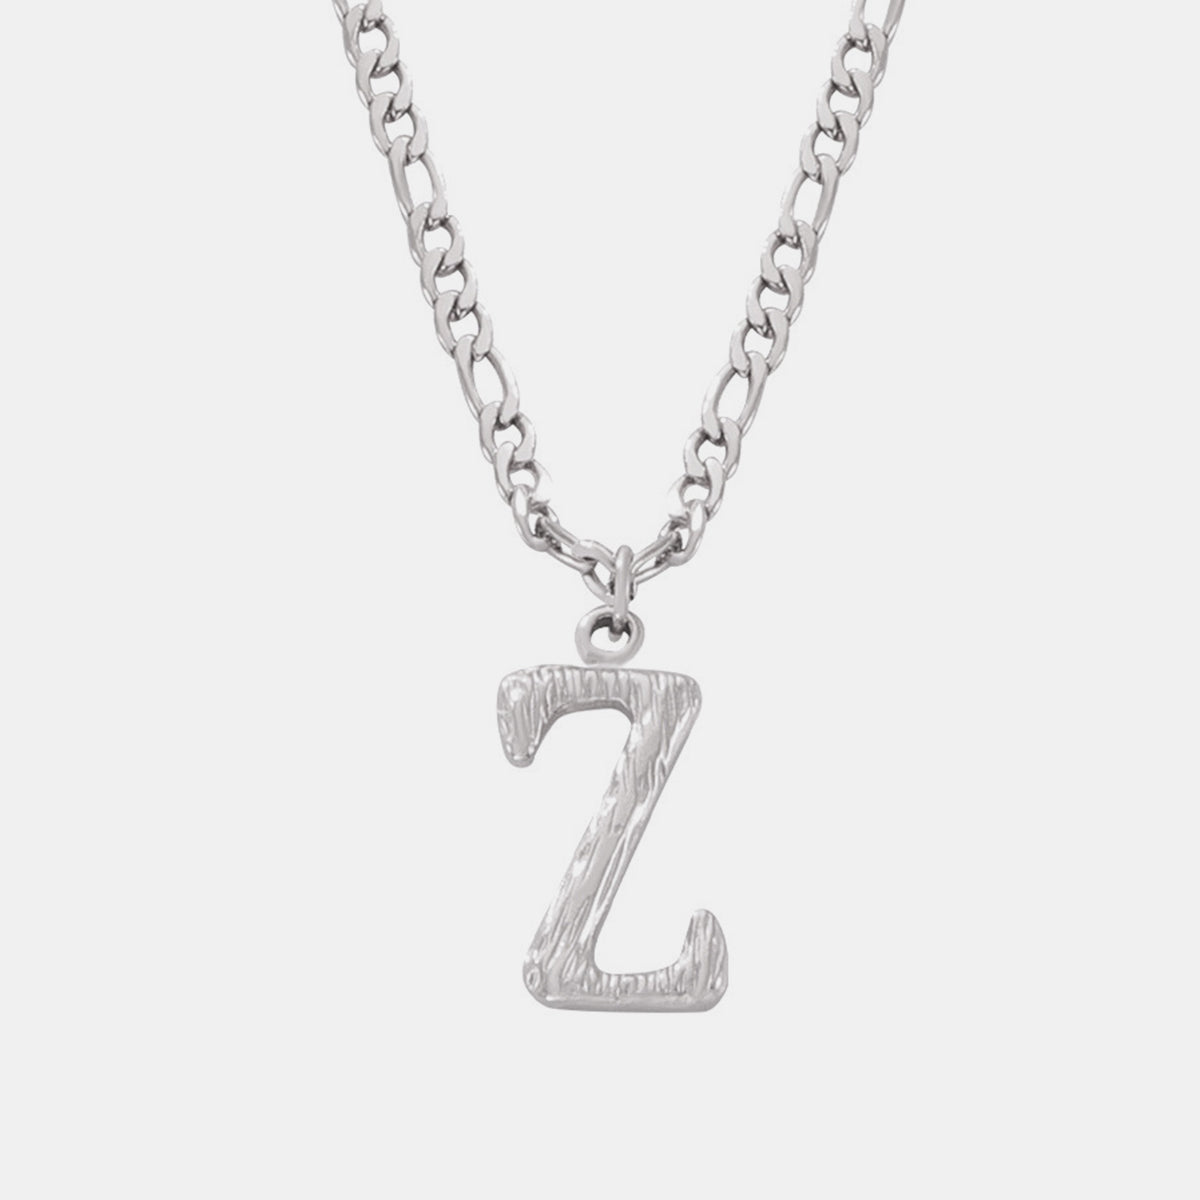 Titanium Steel Letter Pendant Necklace